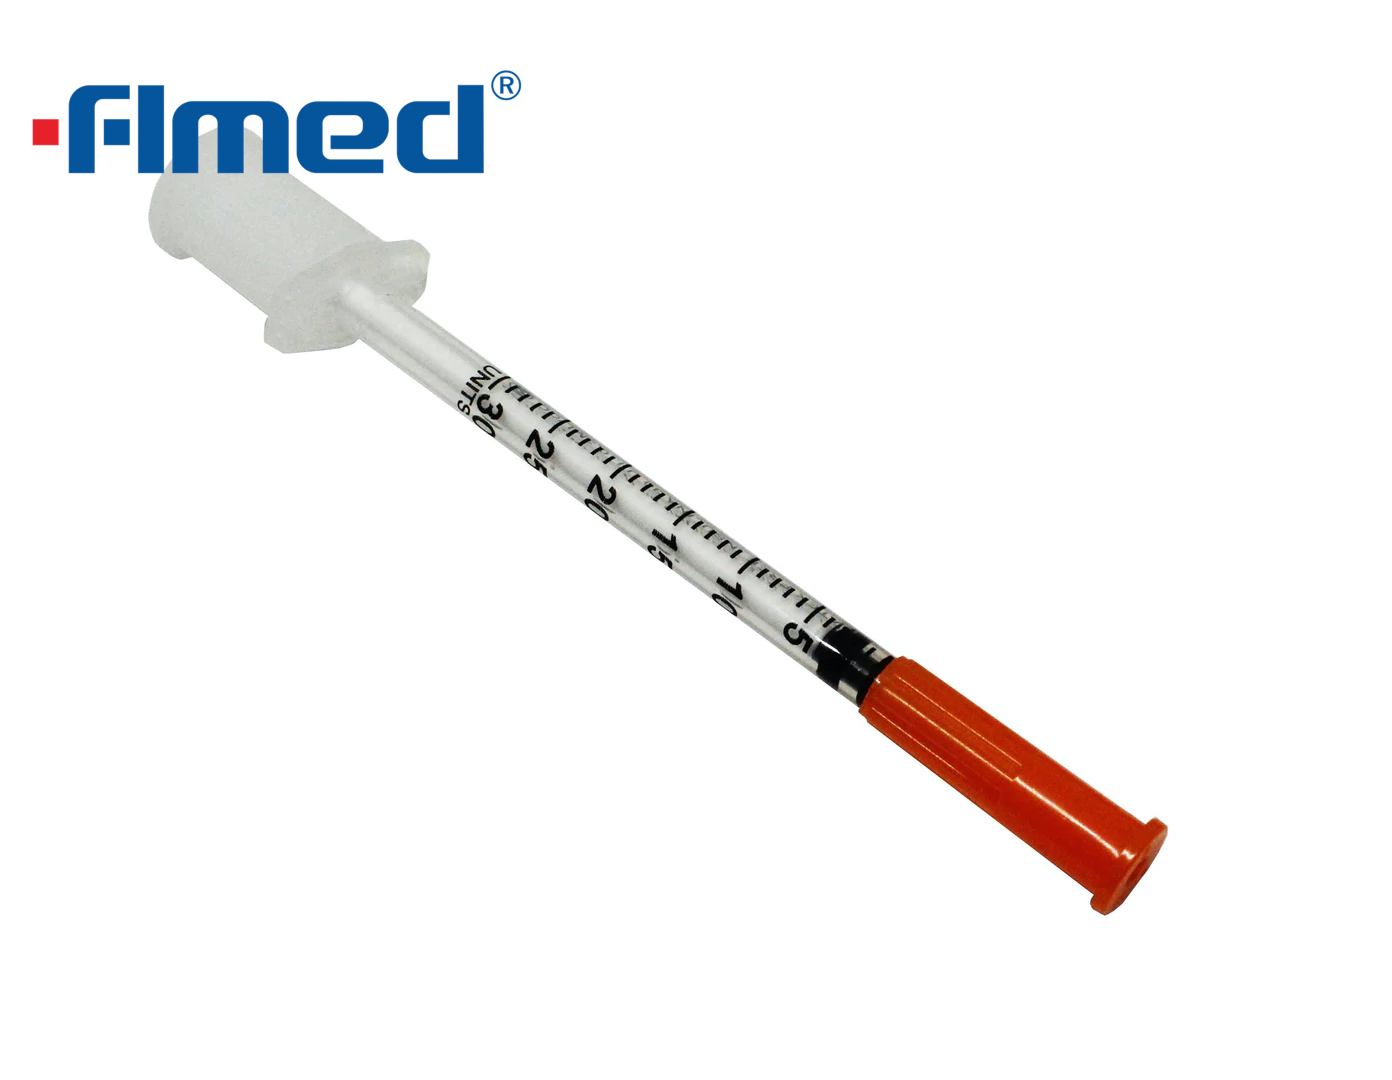 0,3 ml de insulina seringa e agulha 29g x 13mm (29g x 1/2 "polegada)